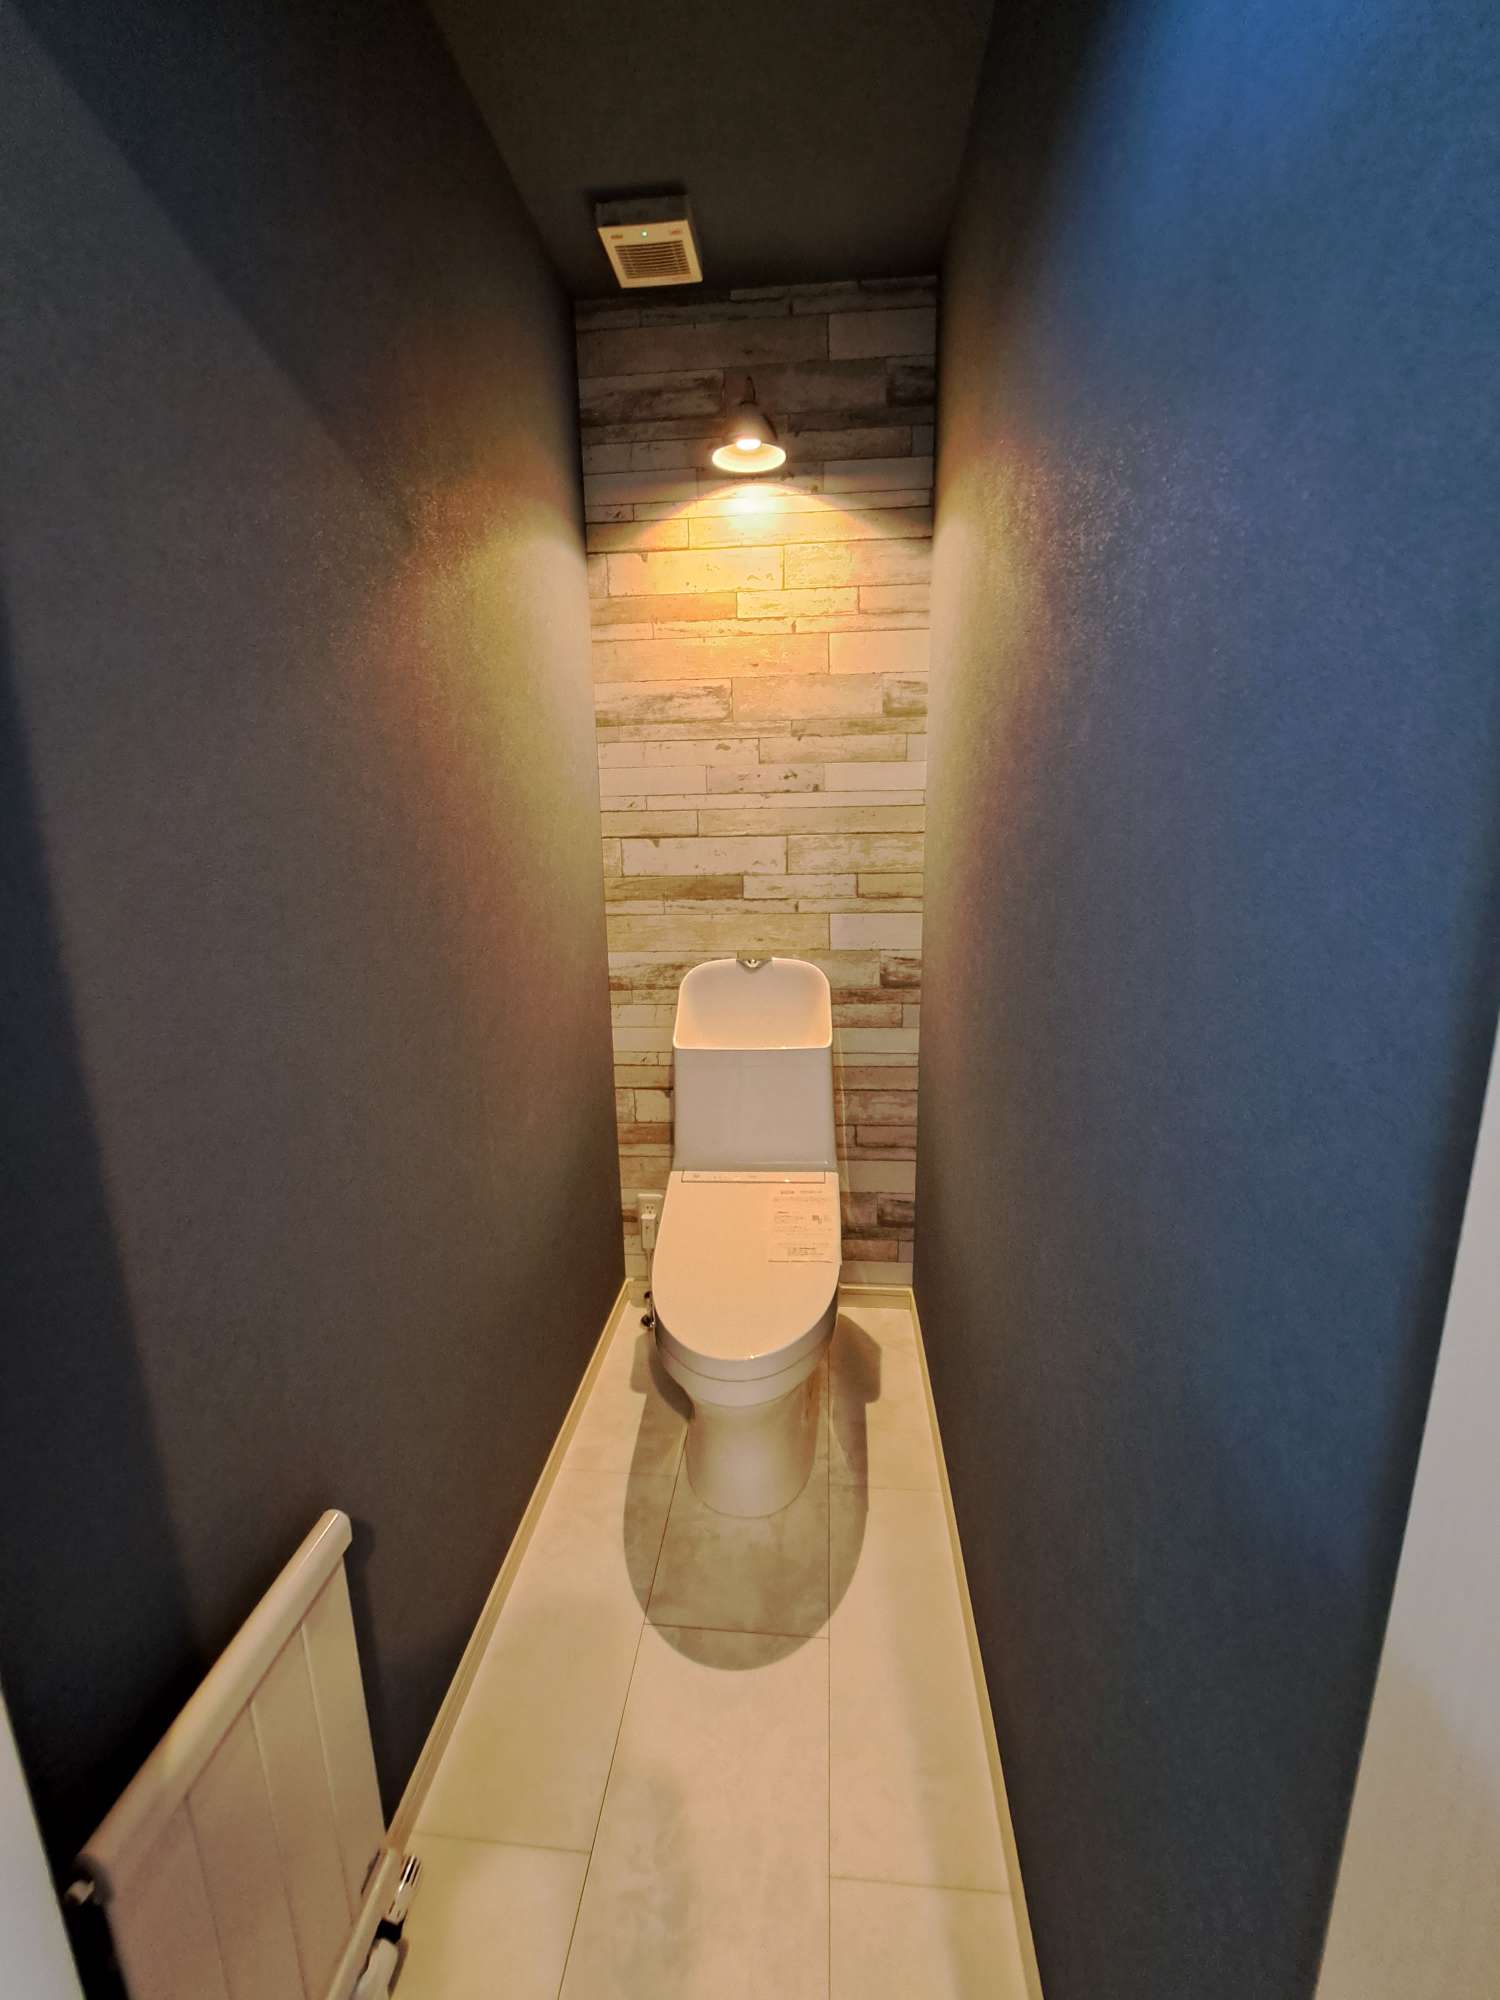 トイレ - 壁からの照明とアクセントのクロスを使ったちょっとお洒落な雰囲気のあるトイレ。 -  - 